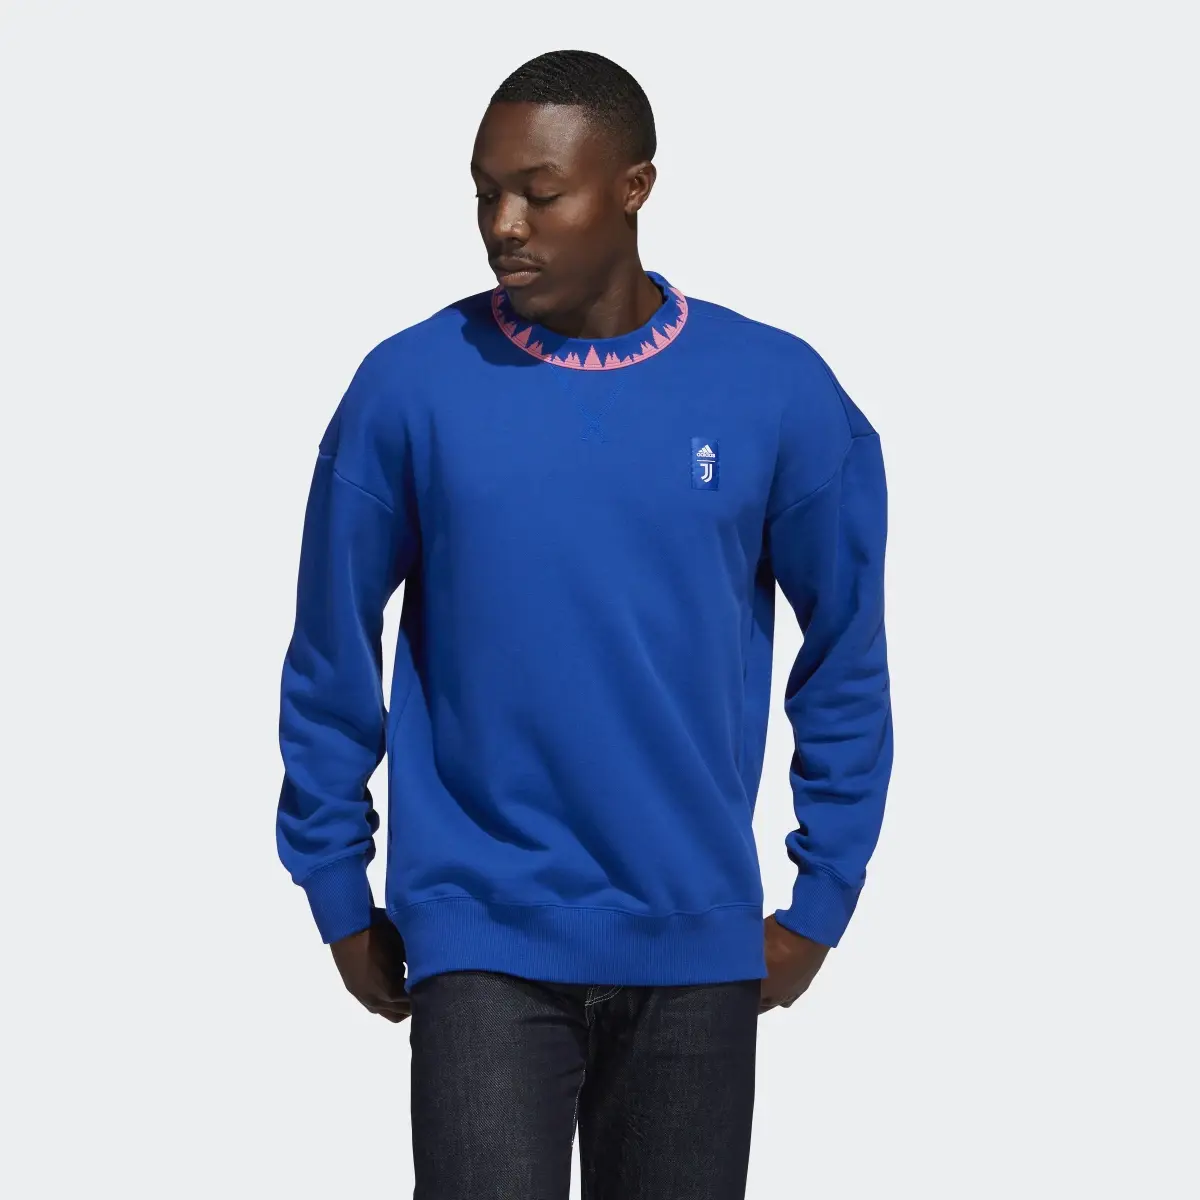 Adidas Juventus Turin Lifestyler Sweatshirt. 2